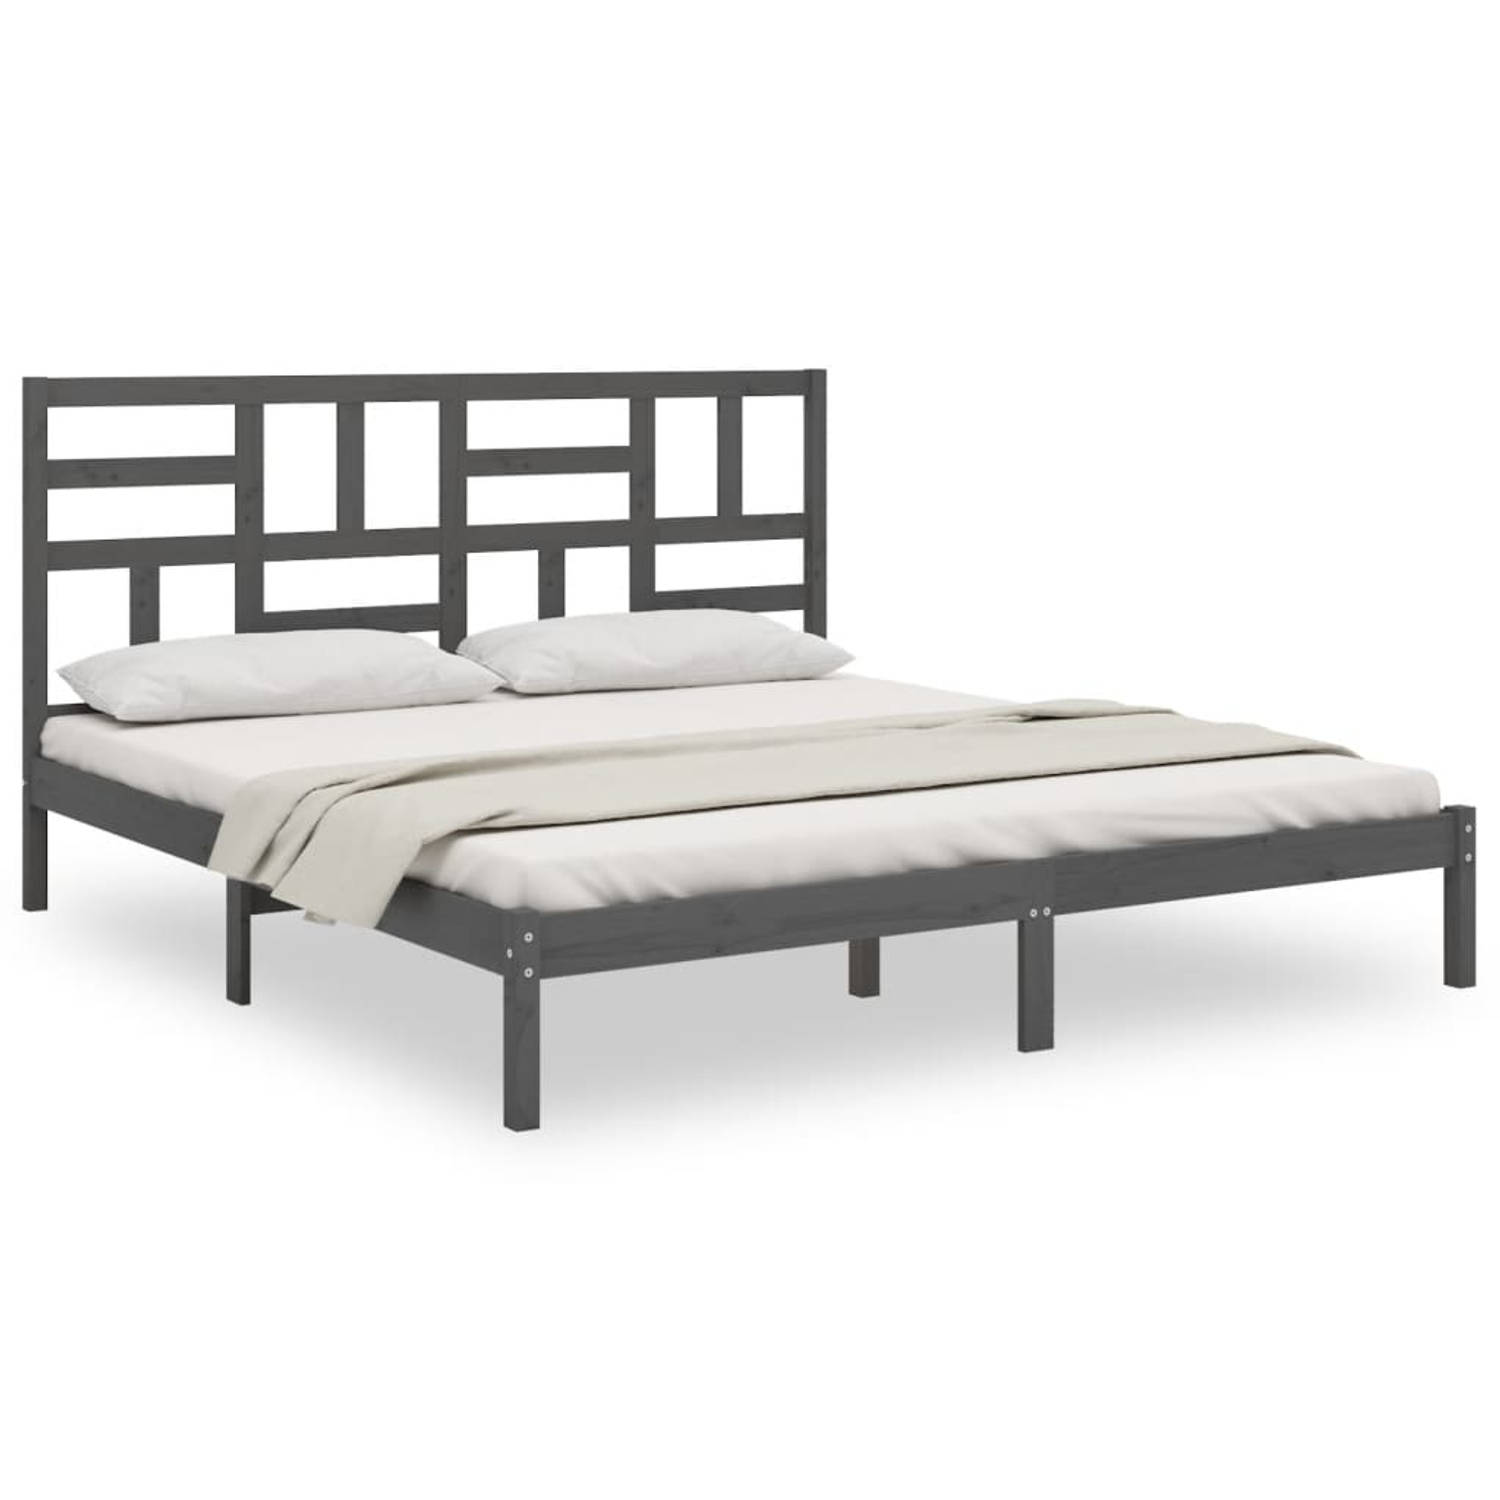 The Living Store Bedframe massief hout grijs 200x200 cm - Bedframe - Bedframes - Bed - Bedbodem - Ledikant - Bed Frame - Massief Houten Bedframe - Slaapmeubel - Tweepersoonsbed - B